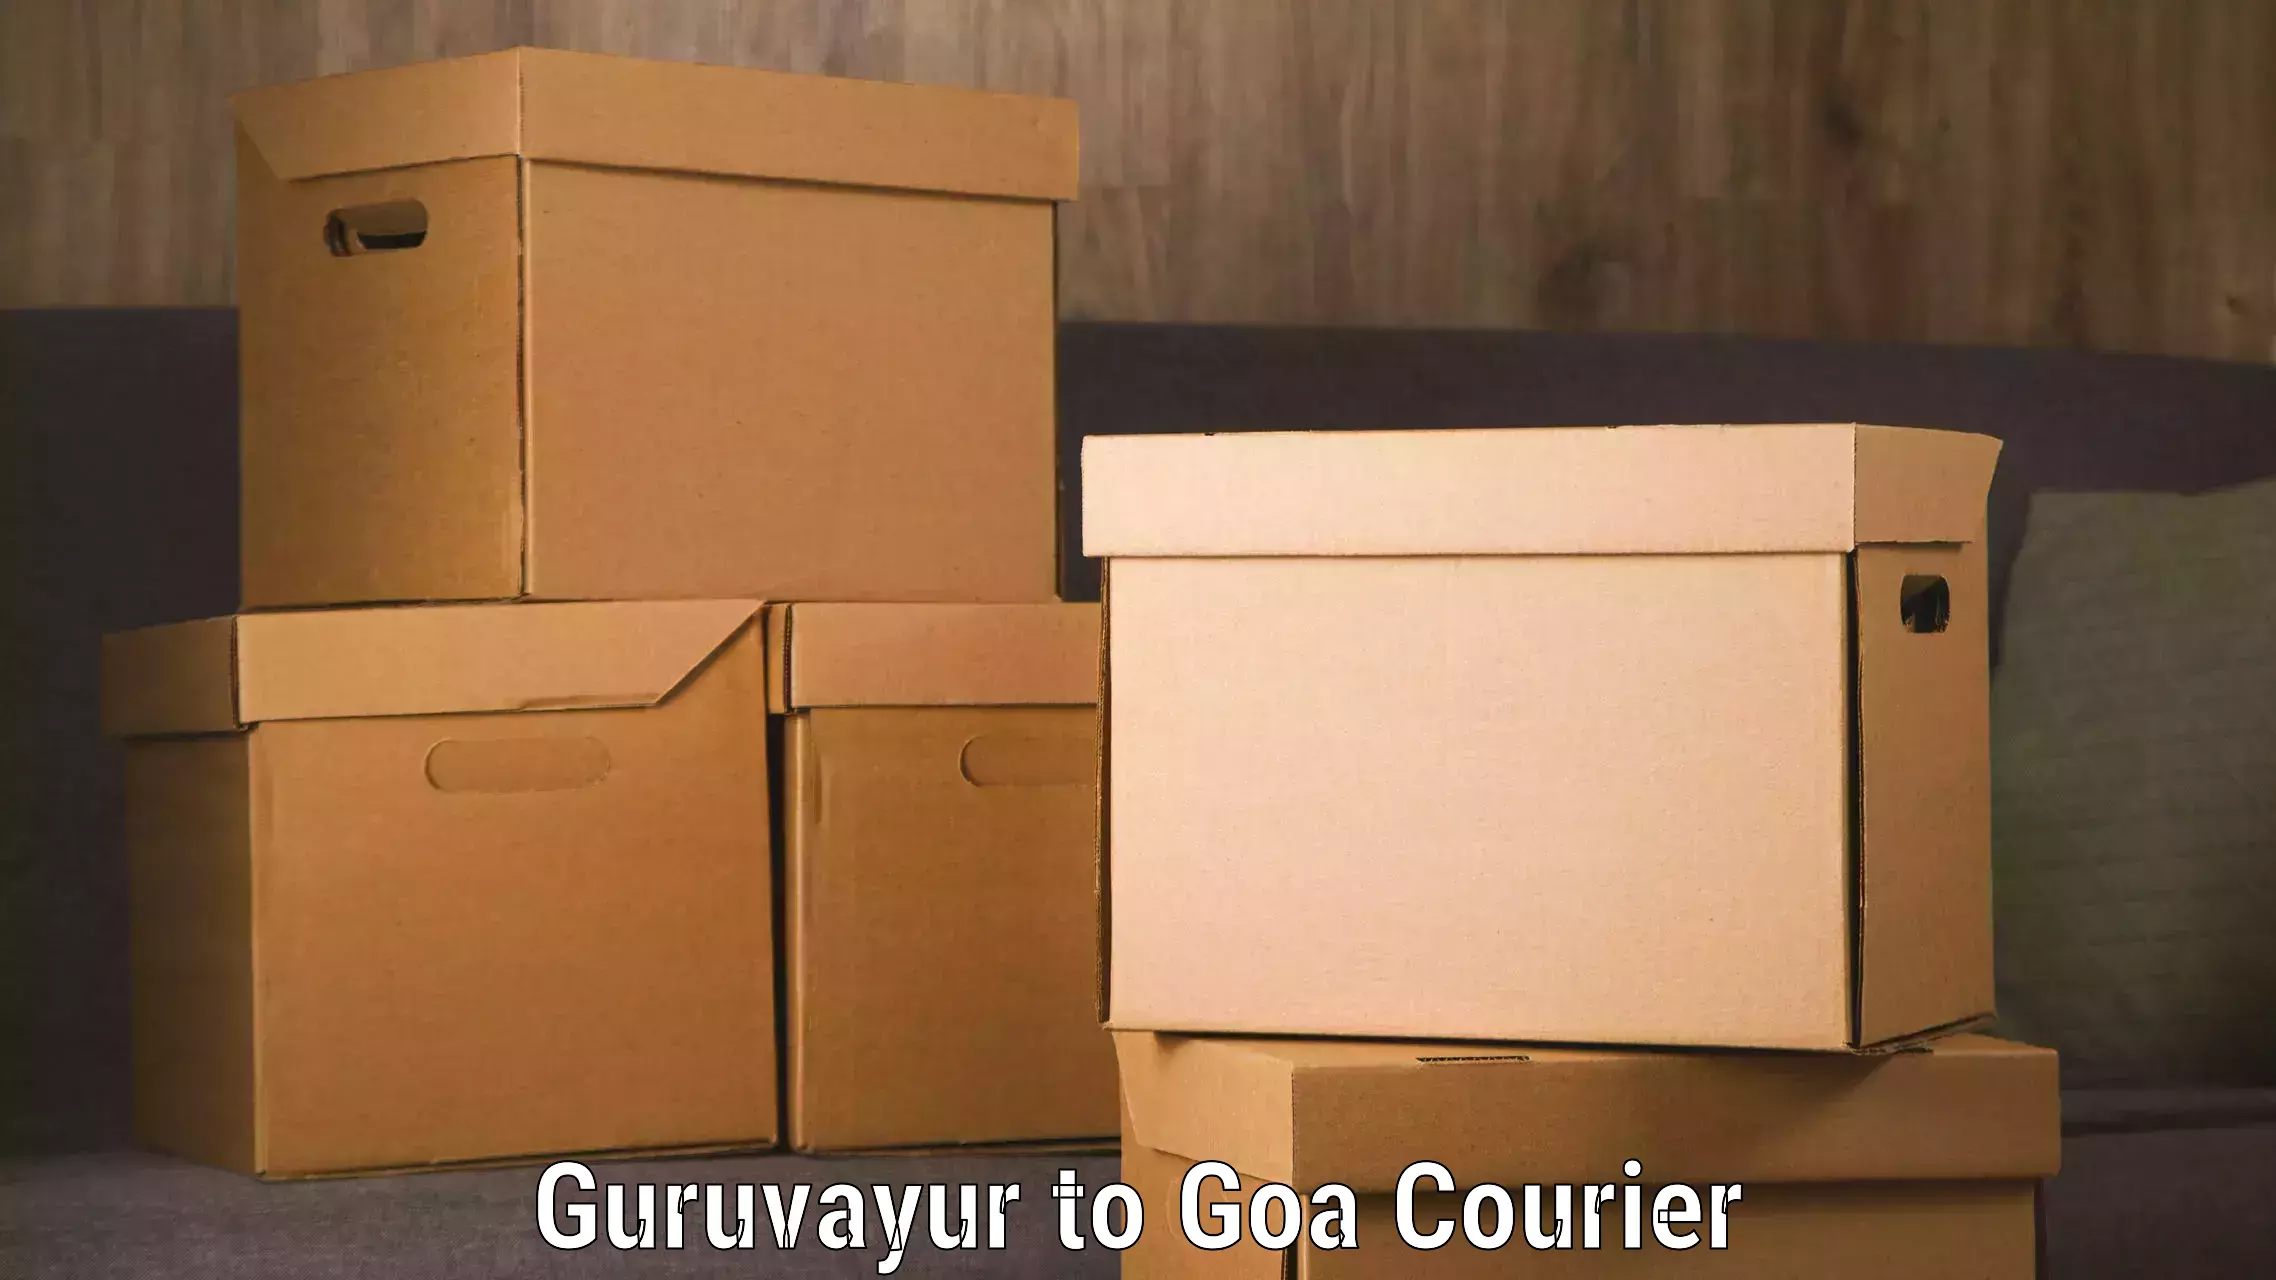 Reliable freight solutions Guruvayur to Vasco da Gama